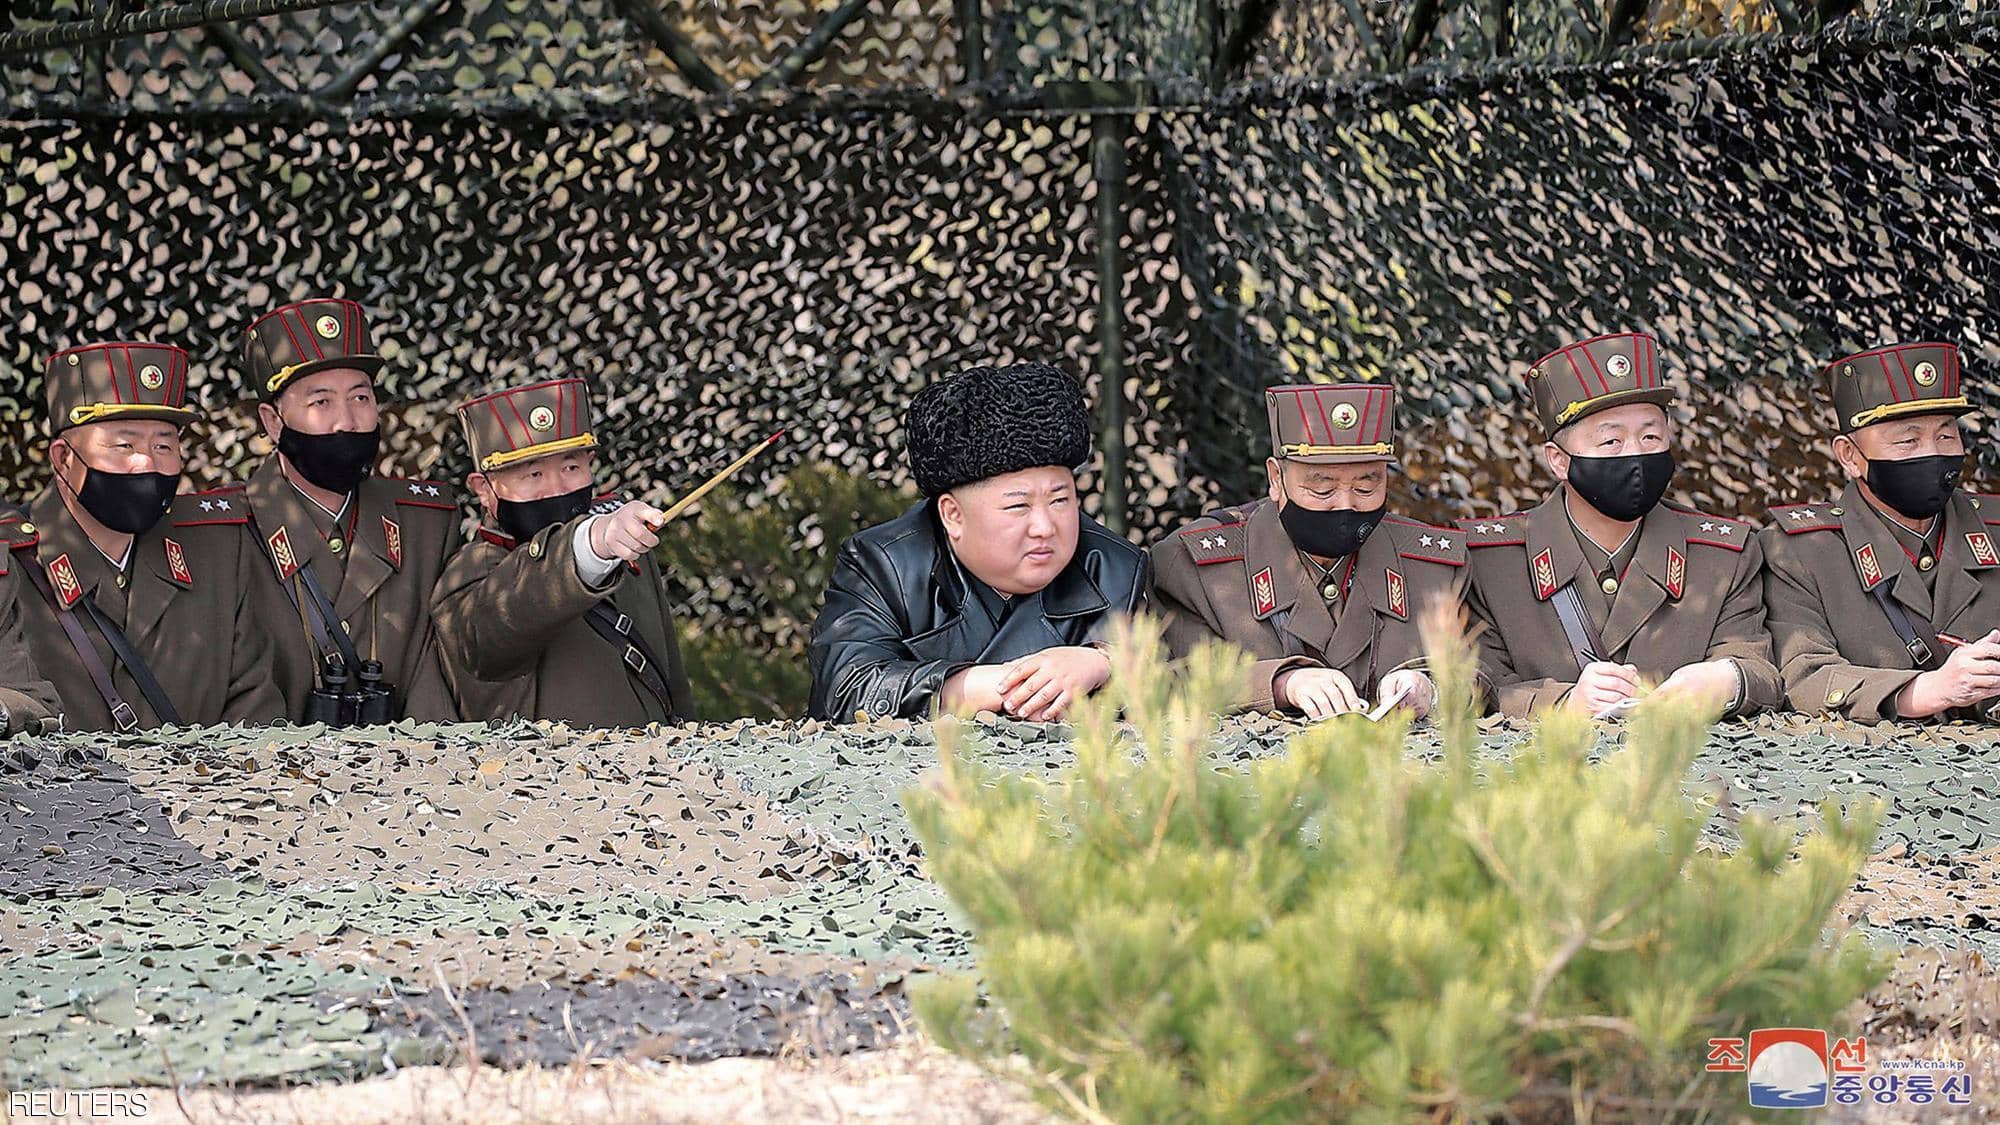 زعيم كوريا الشمالية يحضر تدريبات عسكرية بدون قناع طبى